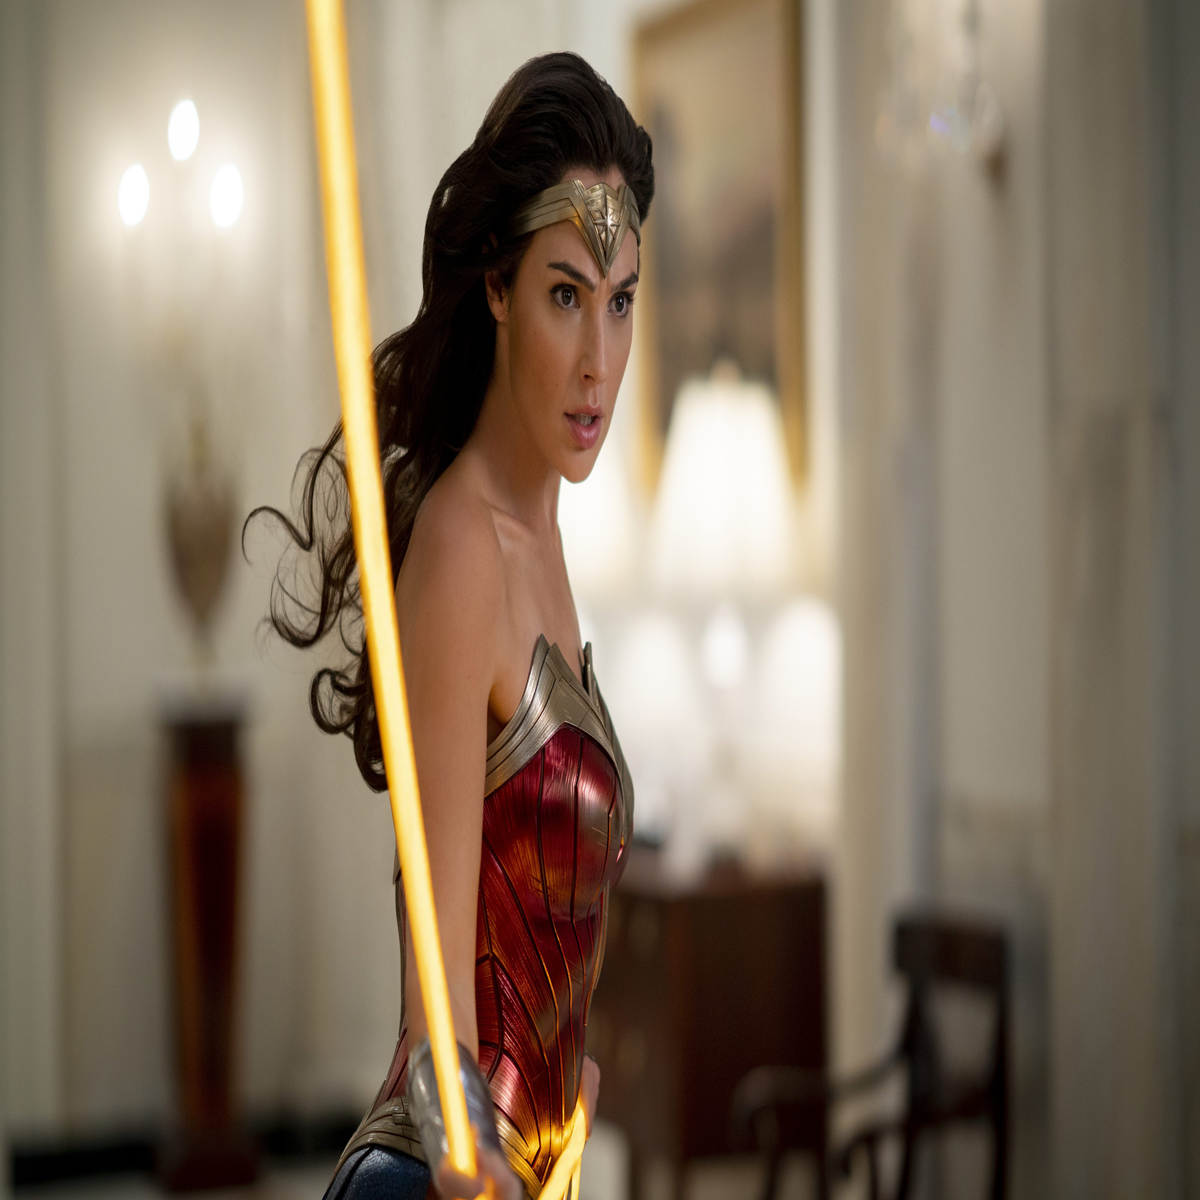 Do you like Adrianne Palicki's Wonder Woman suit? : r/WonderWoman